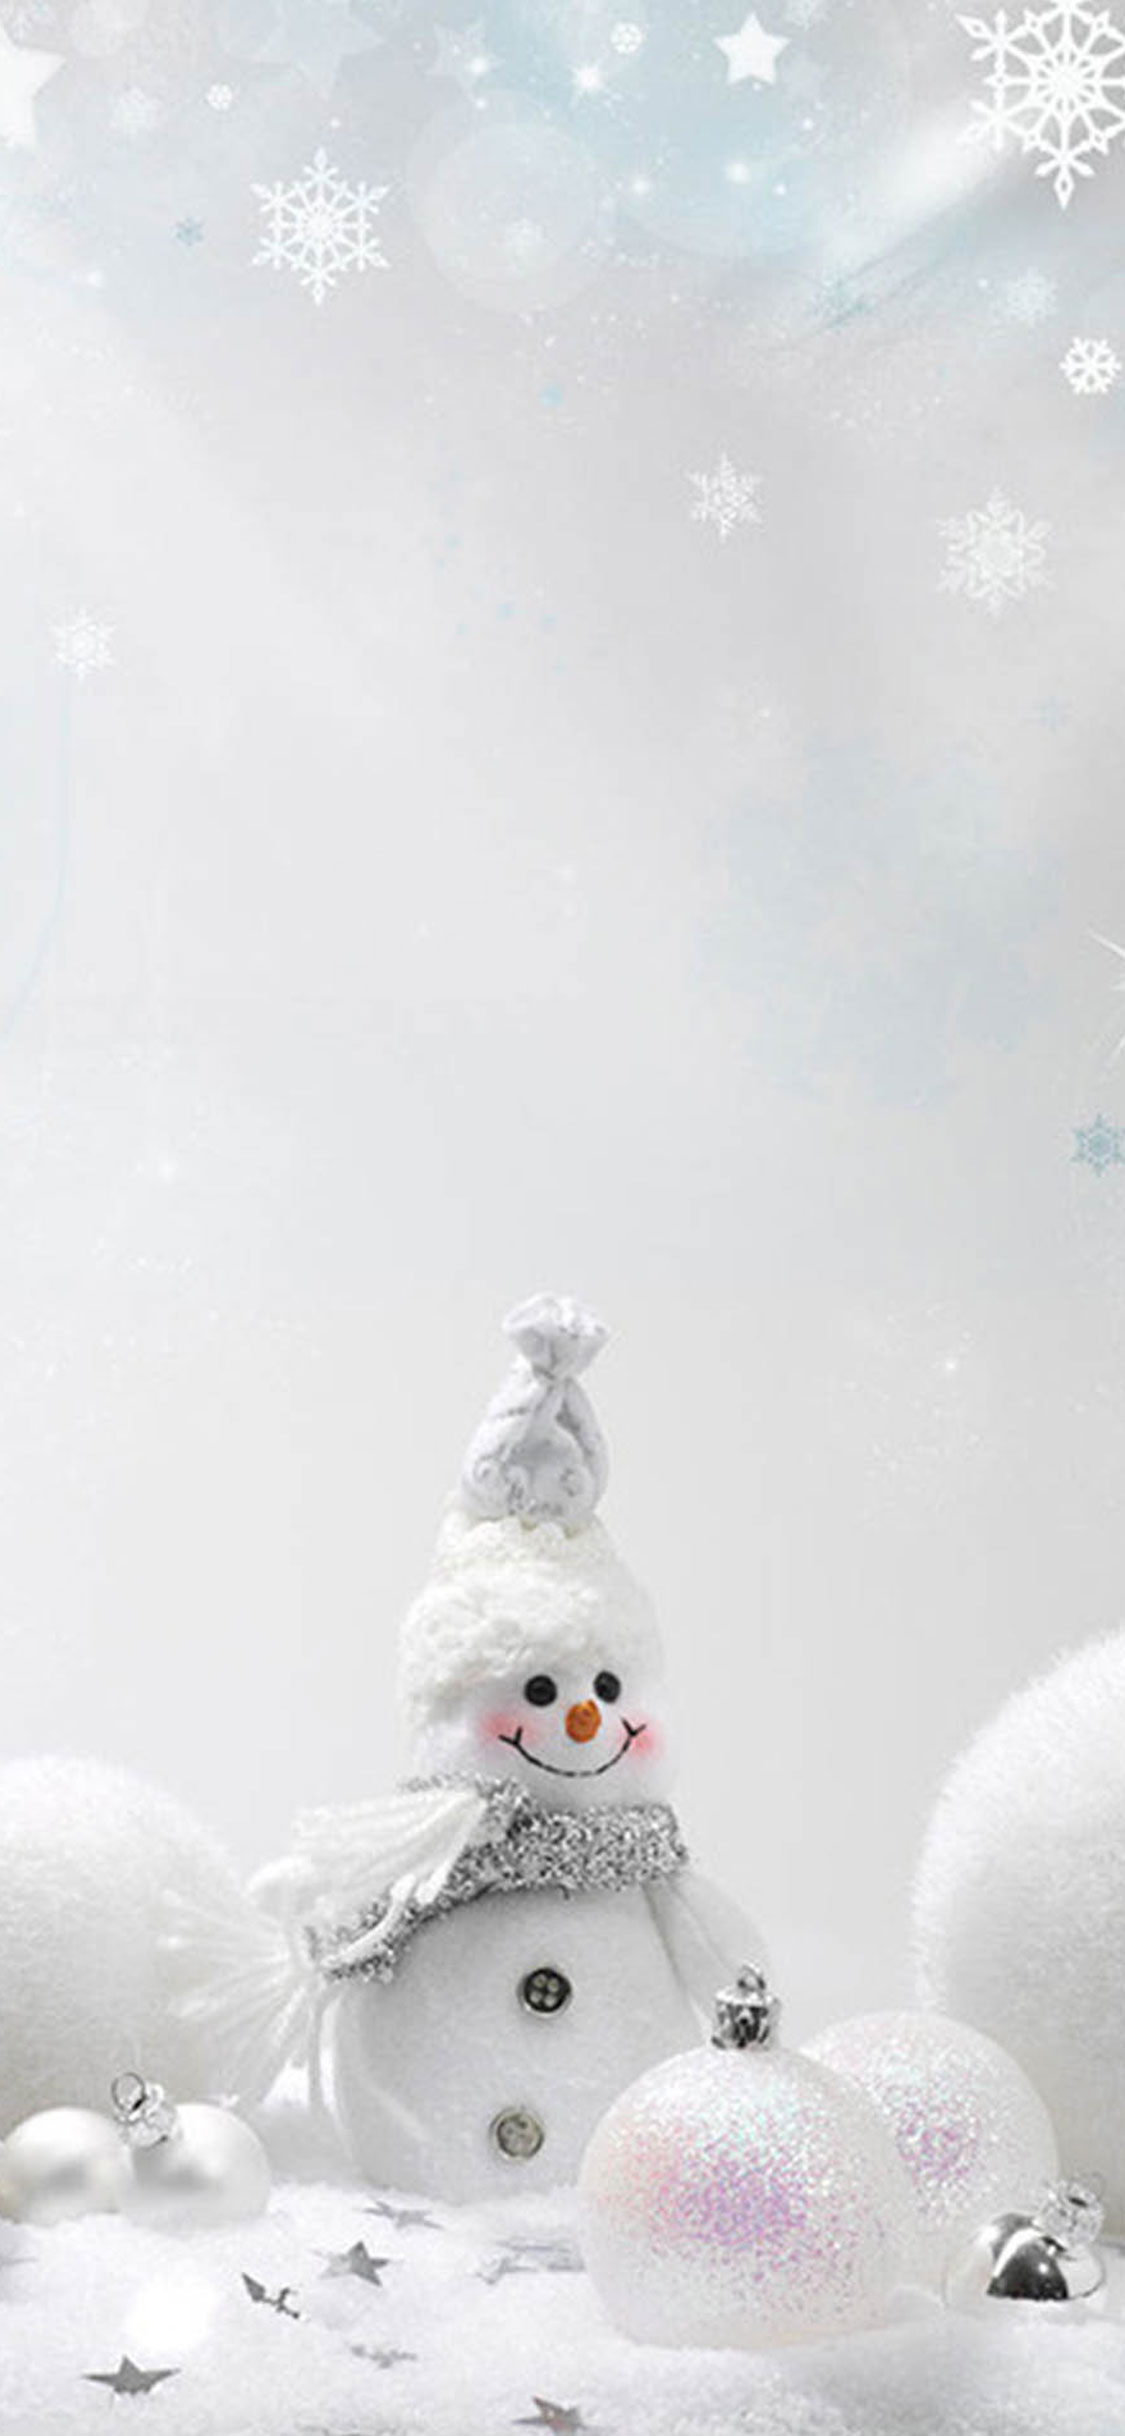 Λευκός χιονάνθρωπος.jpg